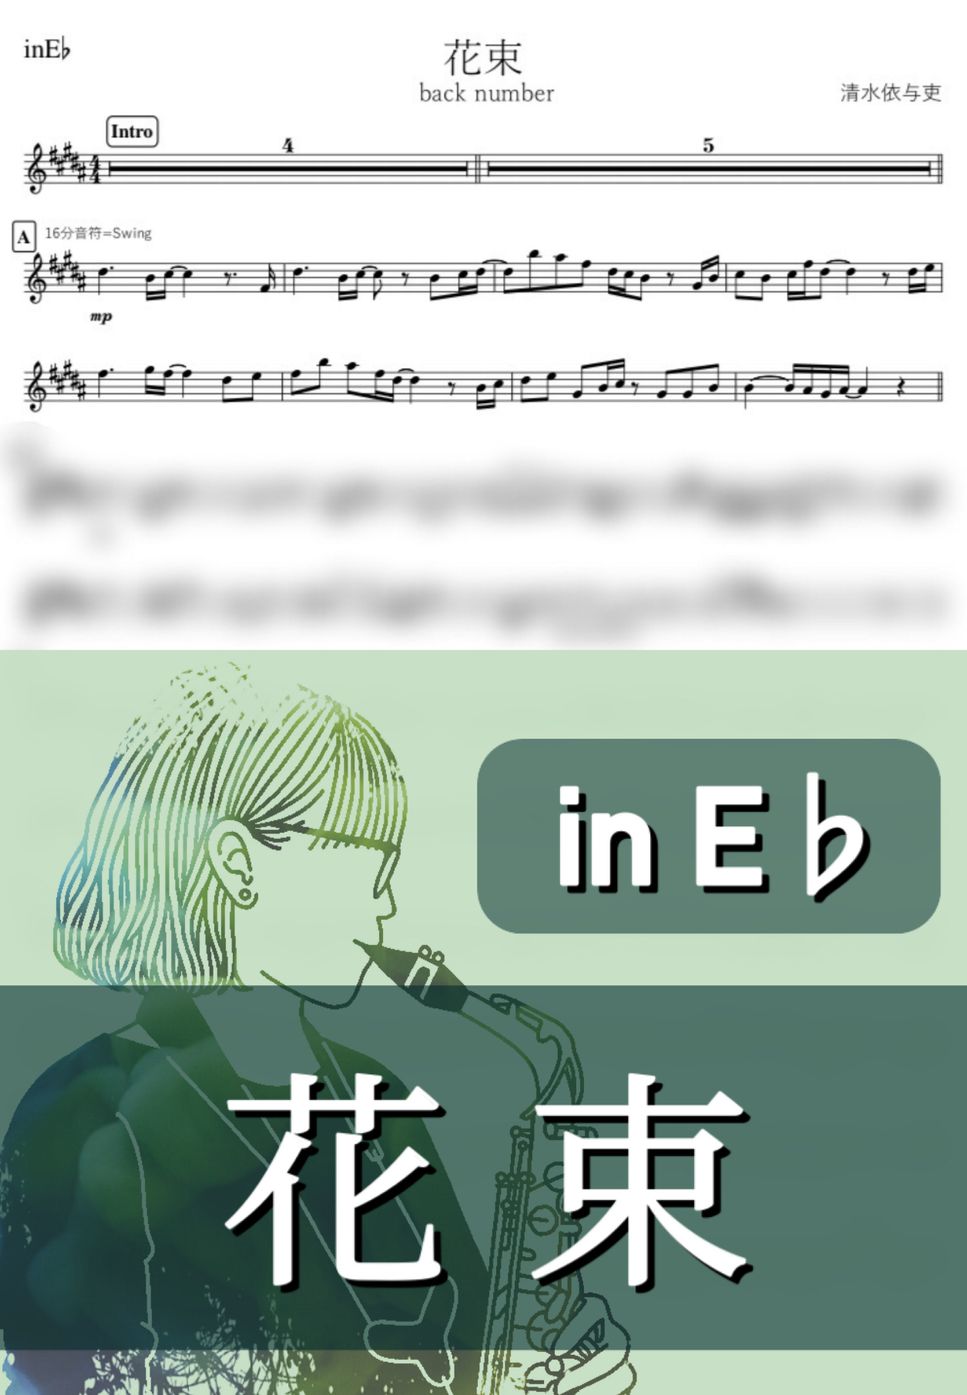 back number - 花束 (E♭) by kanamusic